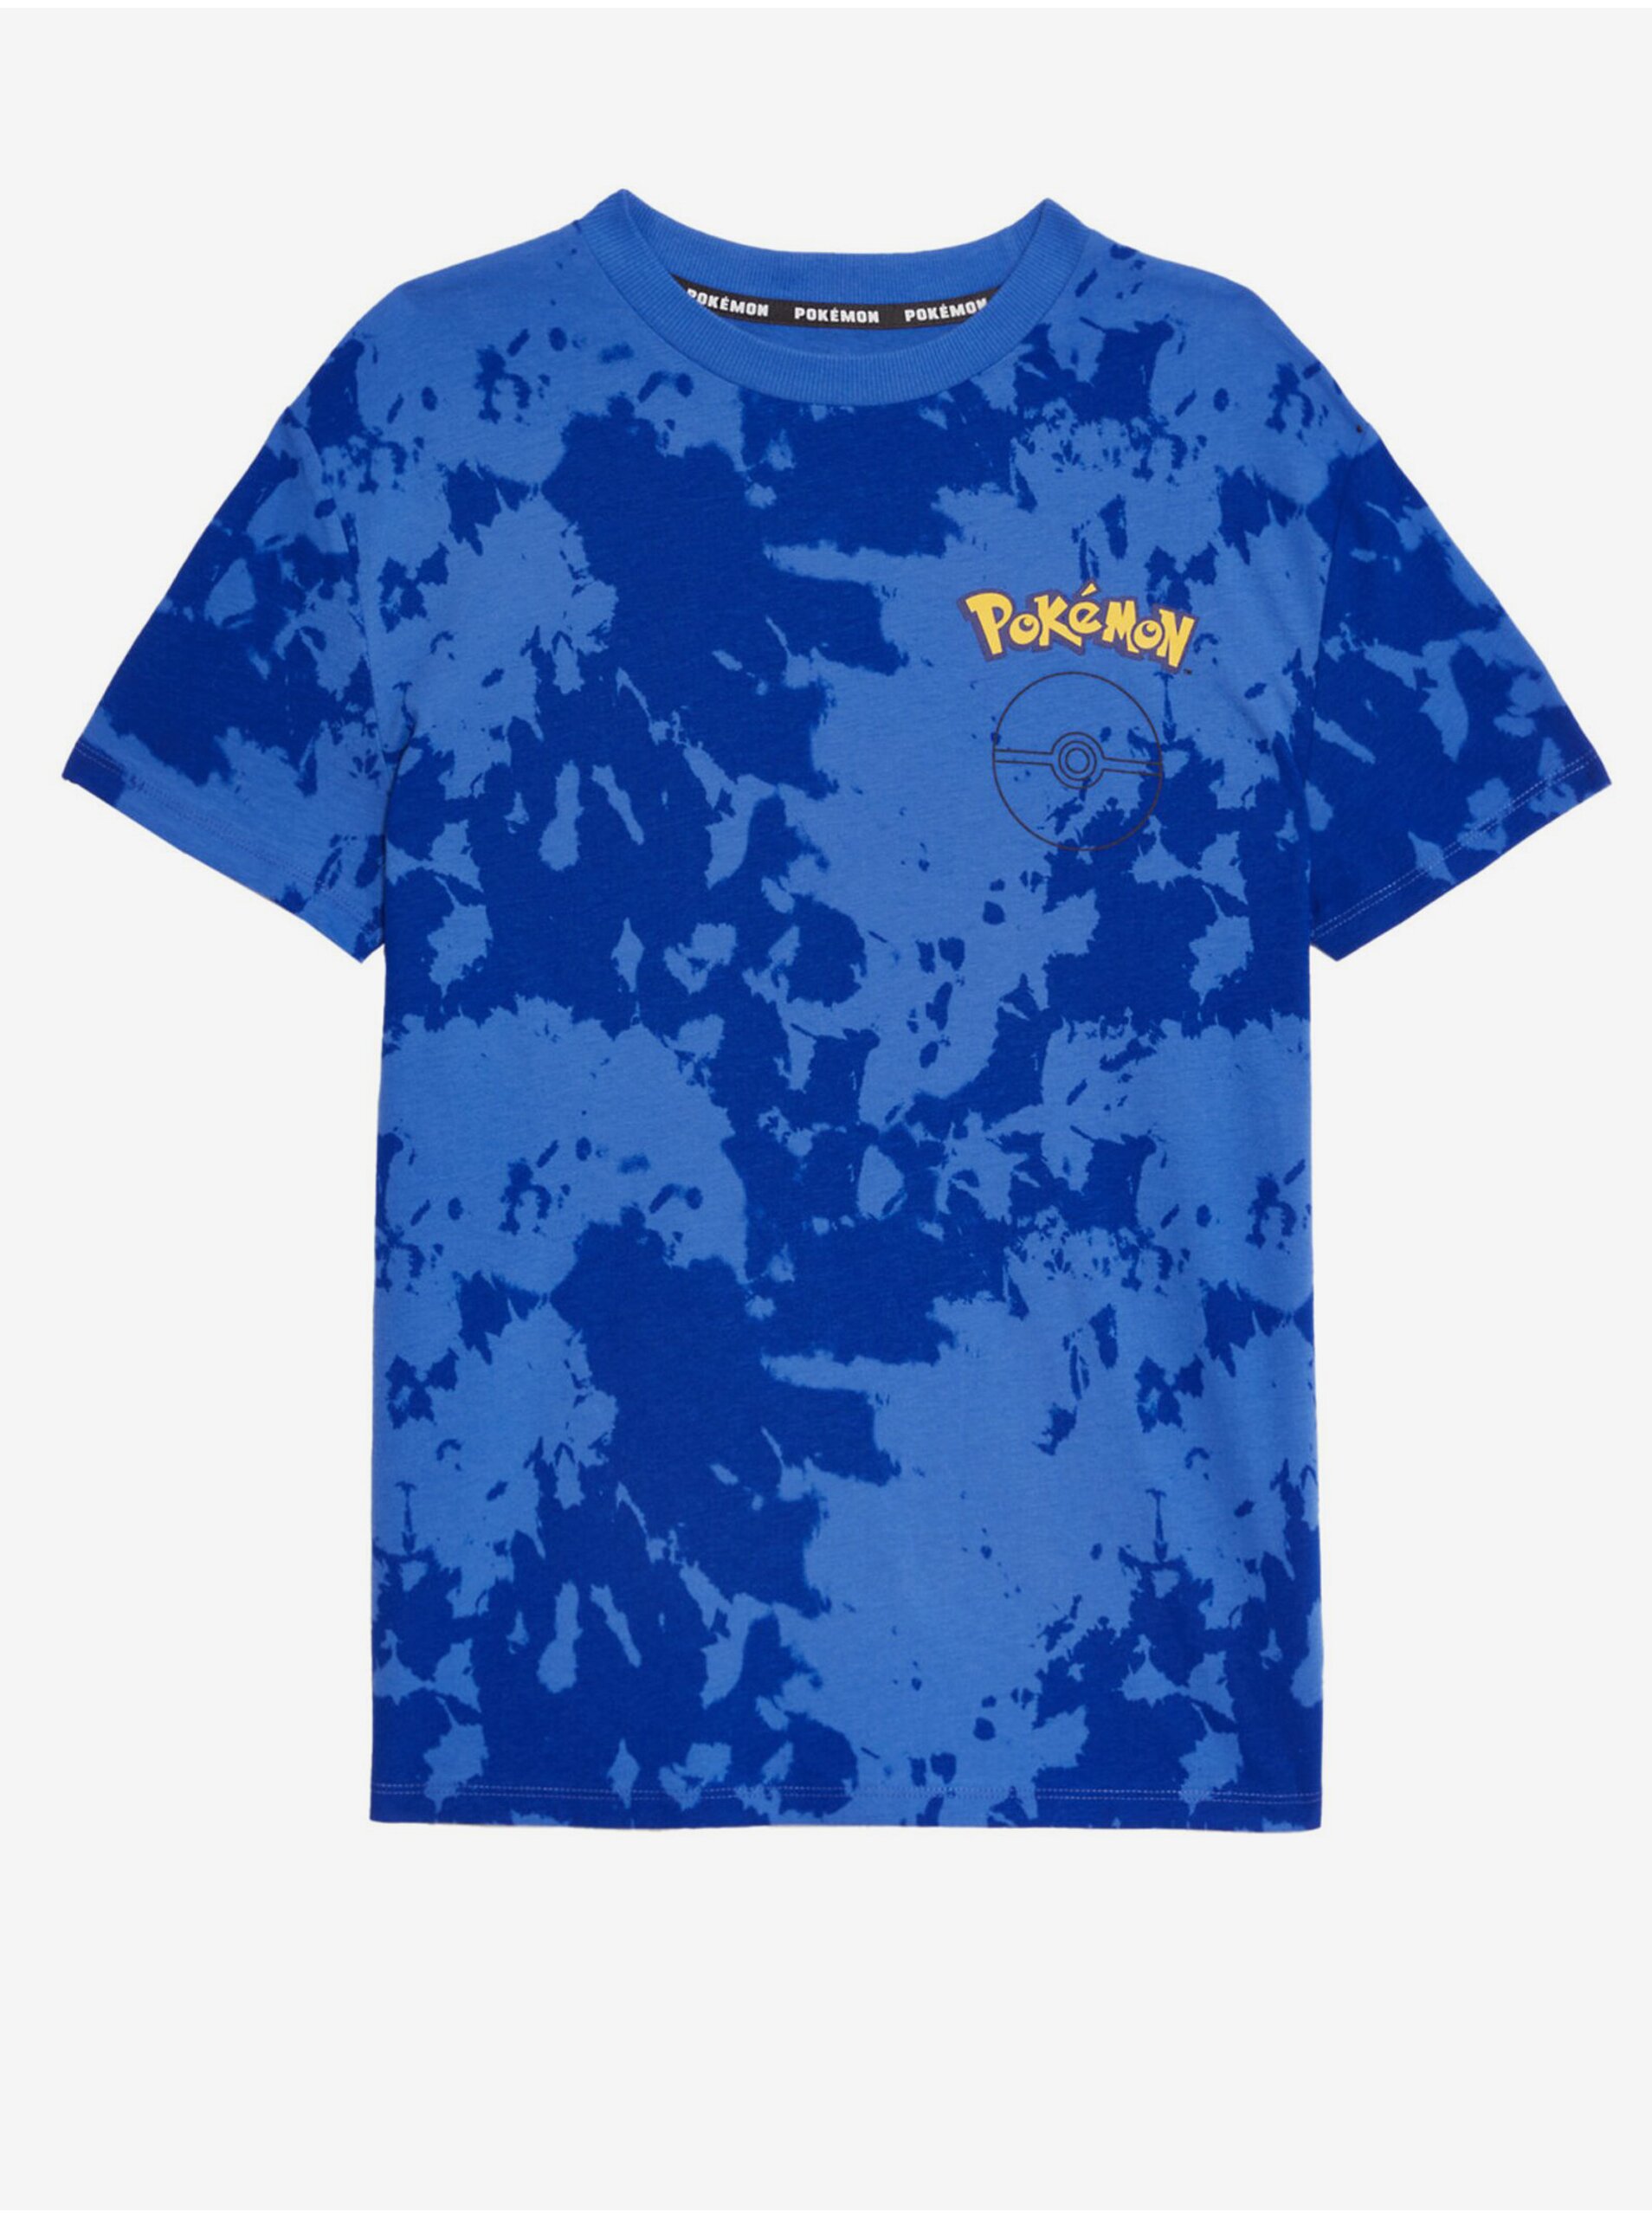 Lacno Modré chlapčenské tričko s motívom Marks & Spencer Pokémon™